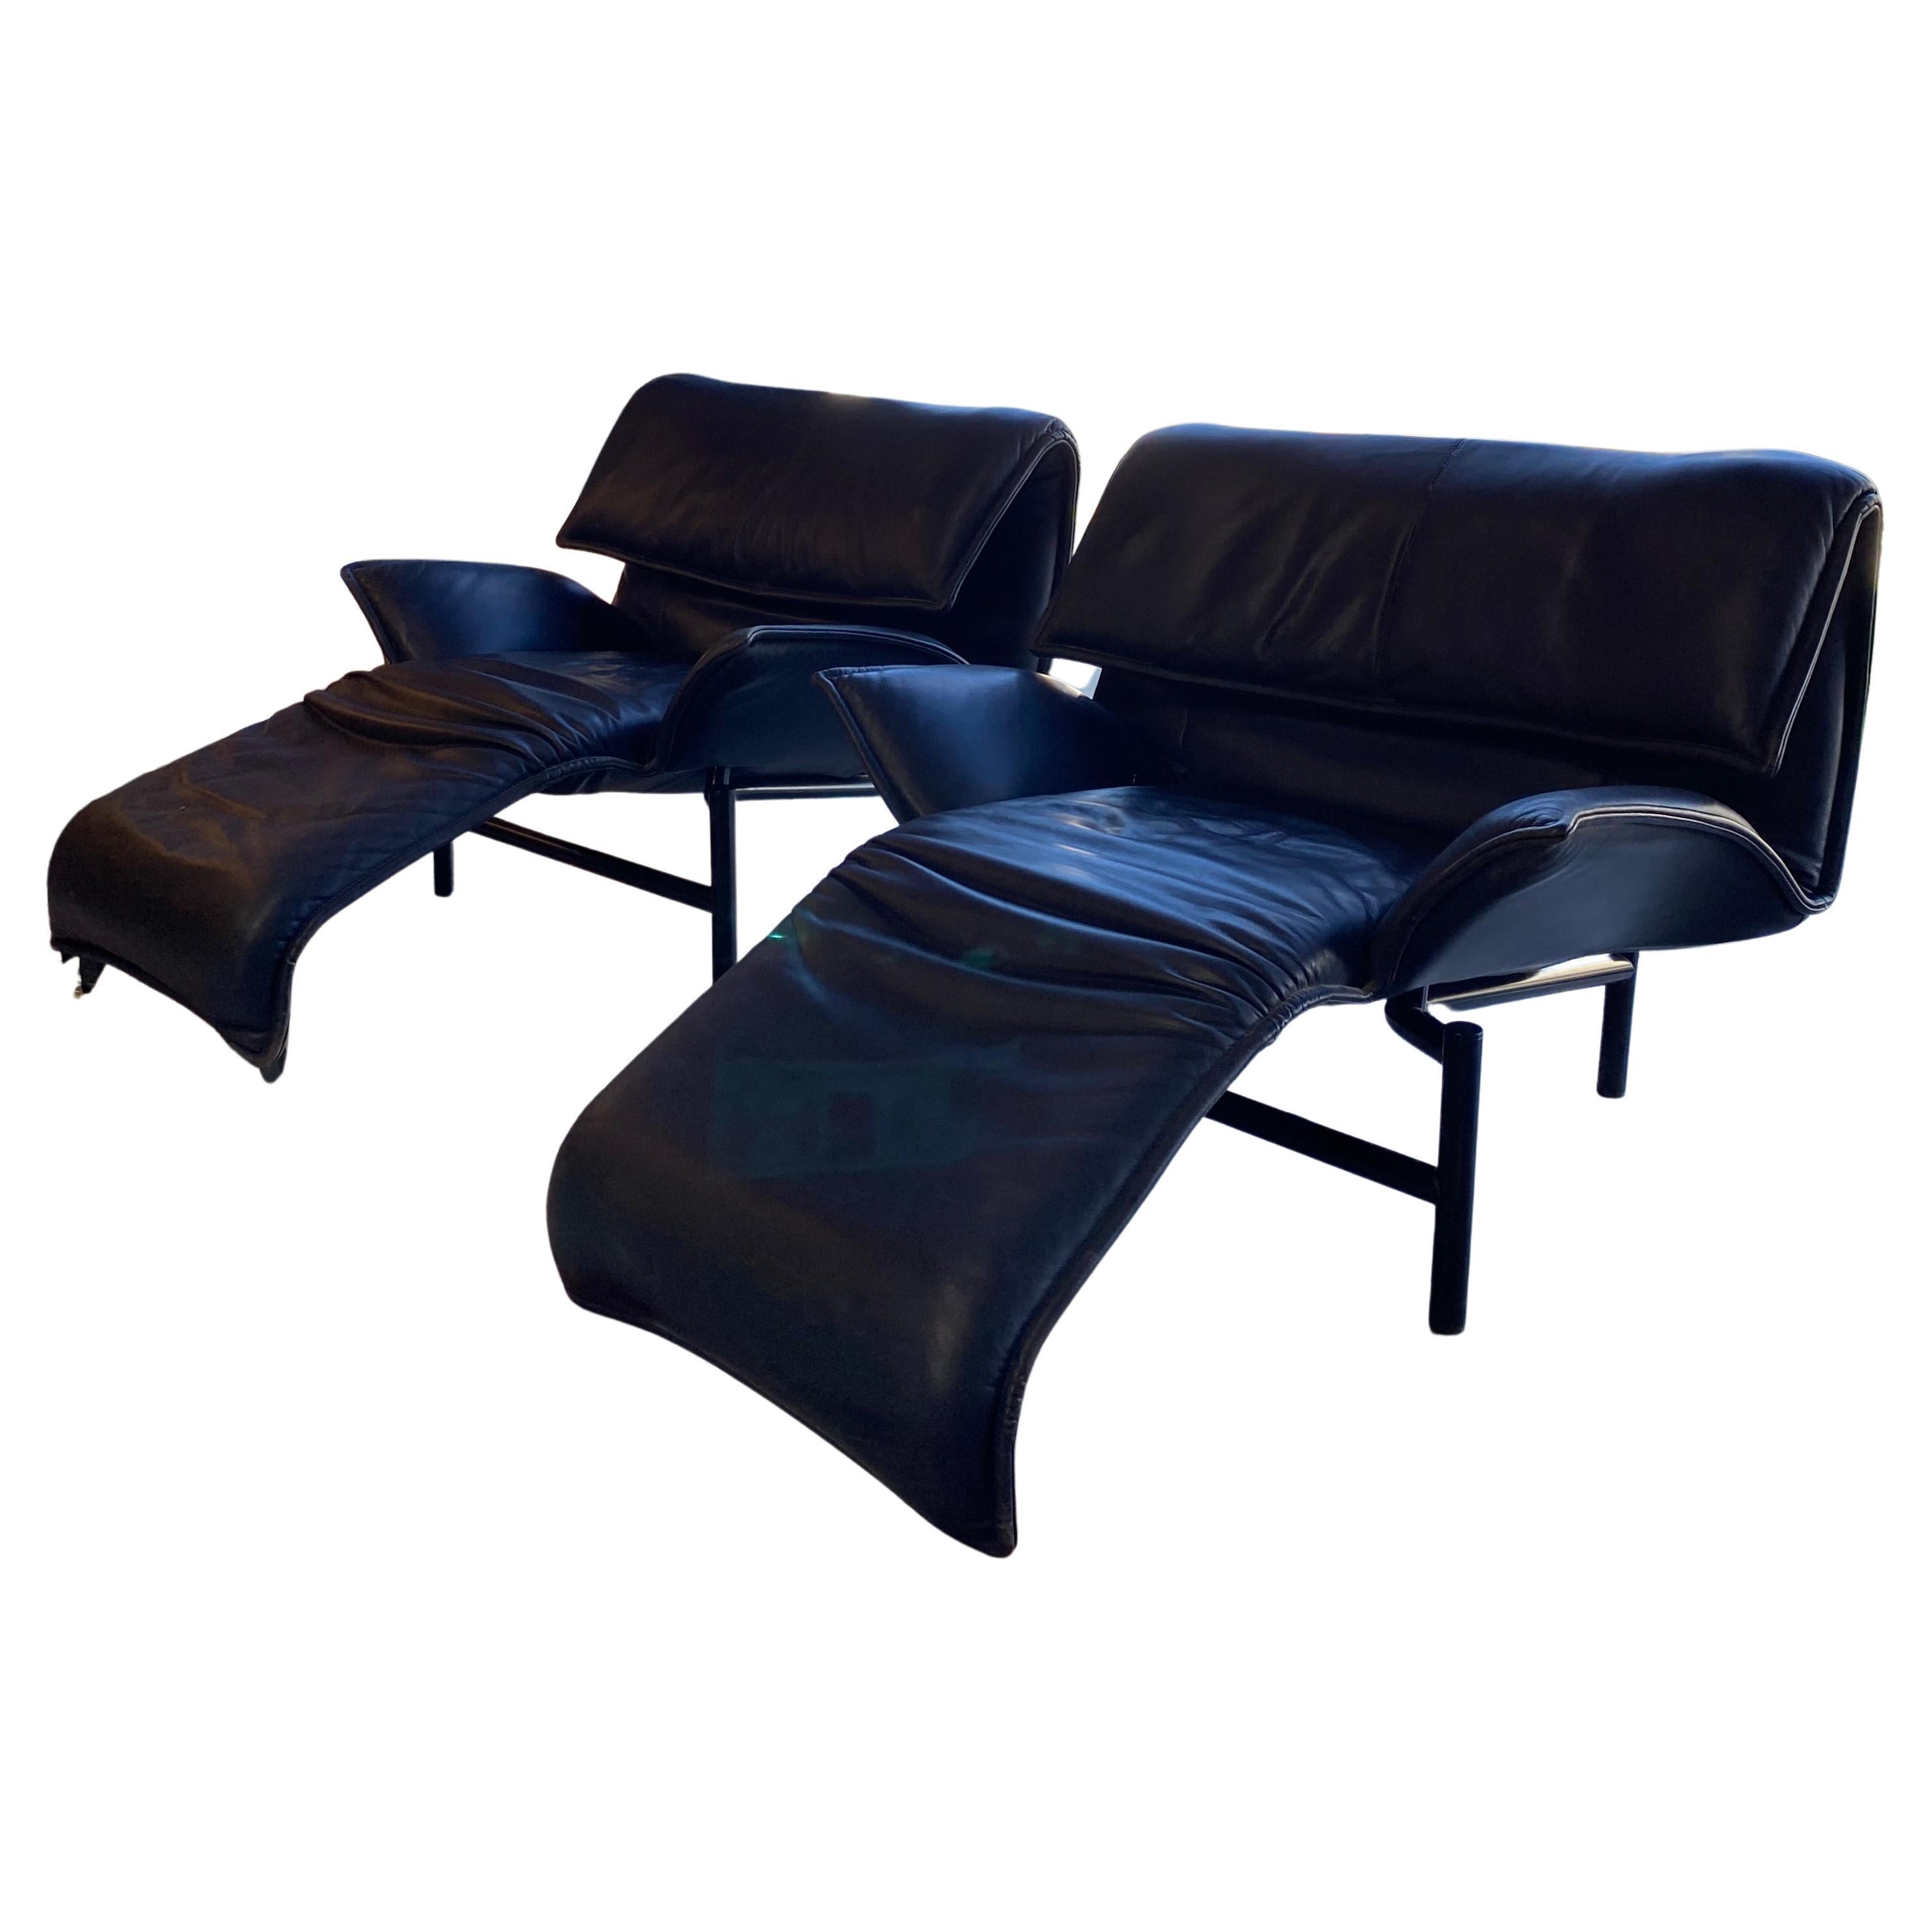 Vico Magistretti for Cassina Veranda Lounge Chair in Blue Leather